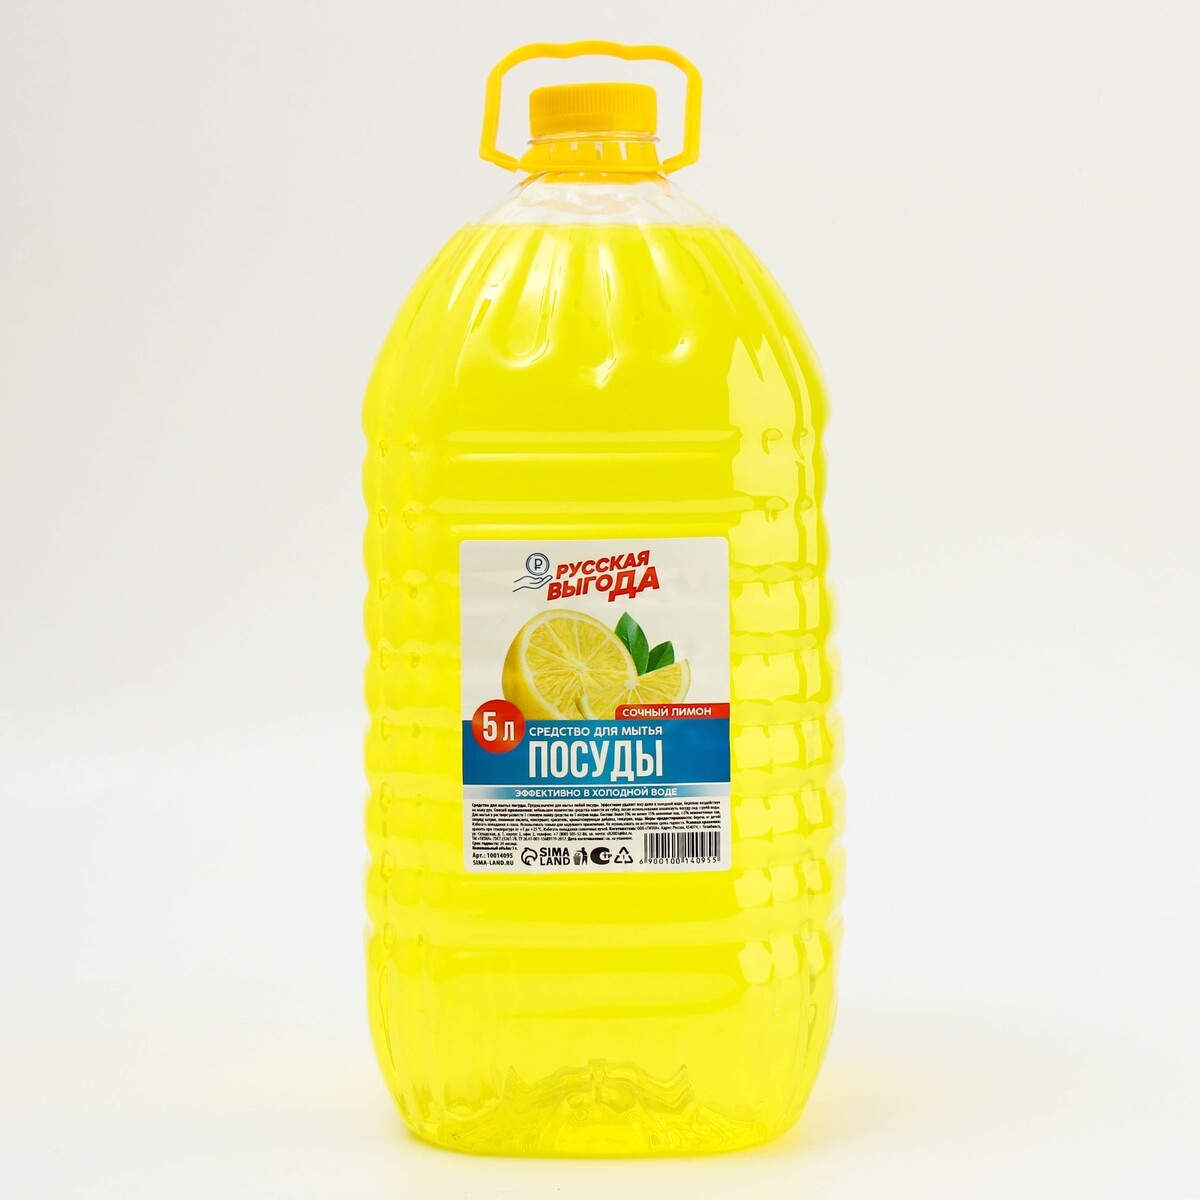 Средство для мытья посуды, аромат лимон, 5 л, русская выгода средство для мытья полов mr proper лимон 0 75 л 81505775